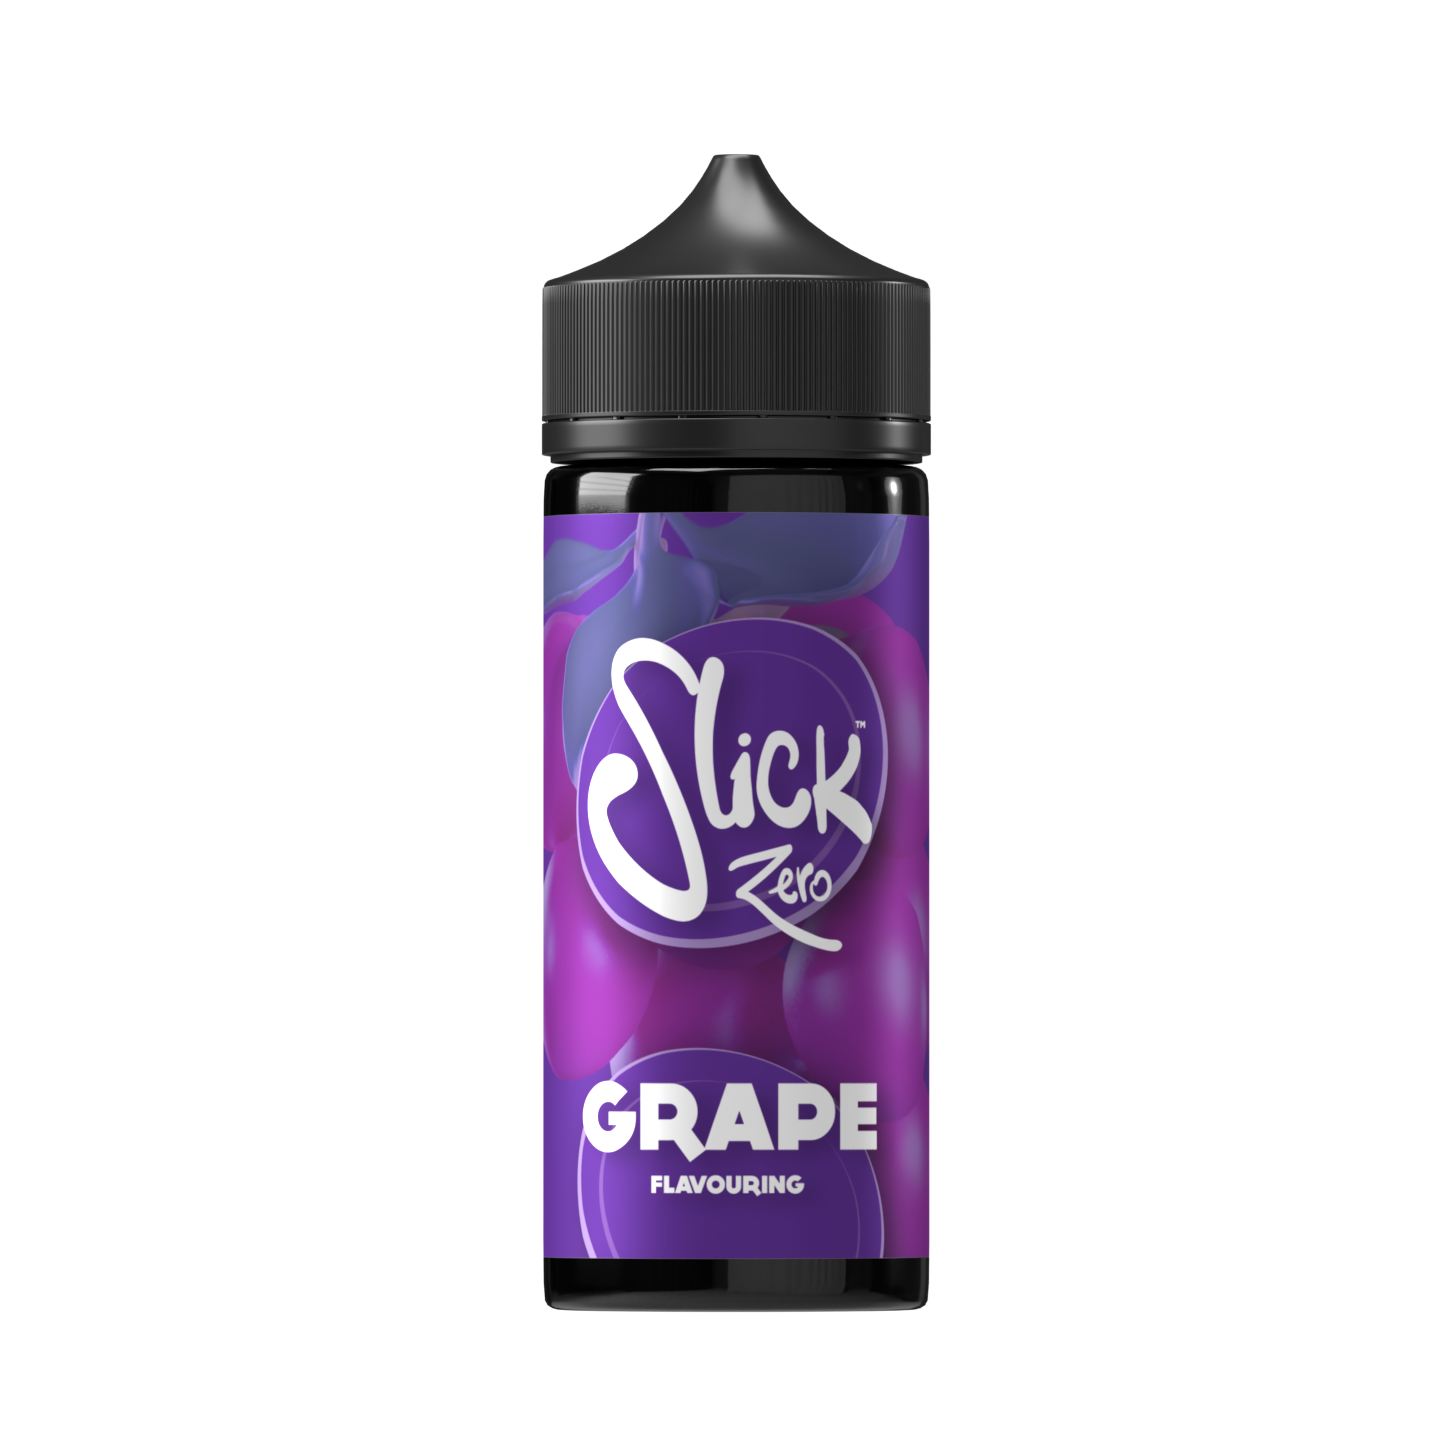 Slick Zero - Grape Flavouring